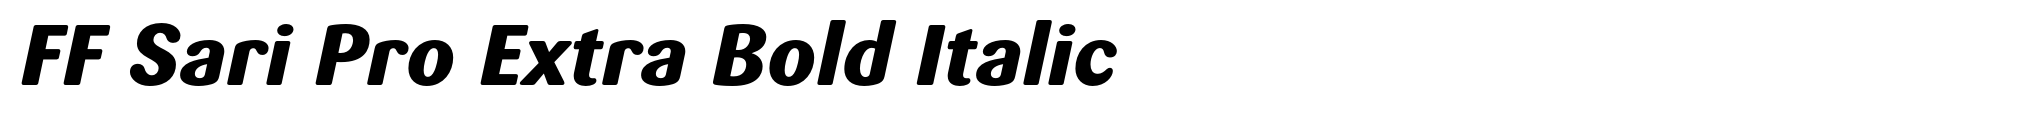 FF Sari Pro Extra Bold Italic image